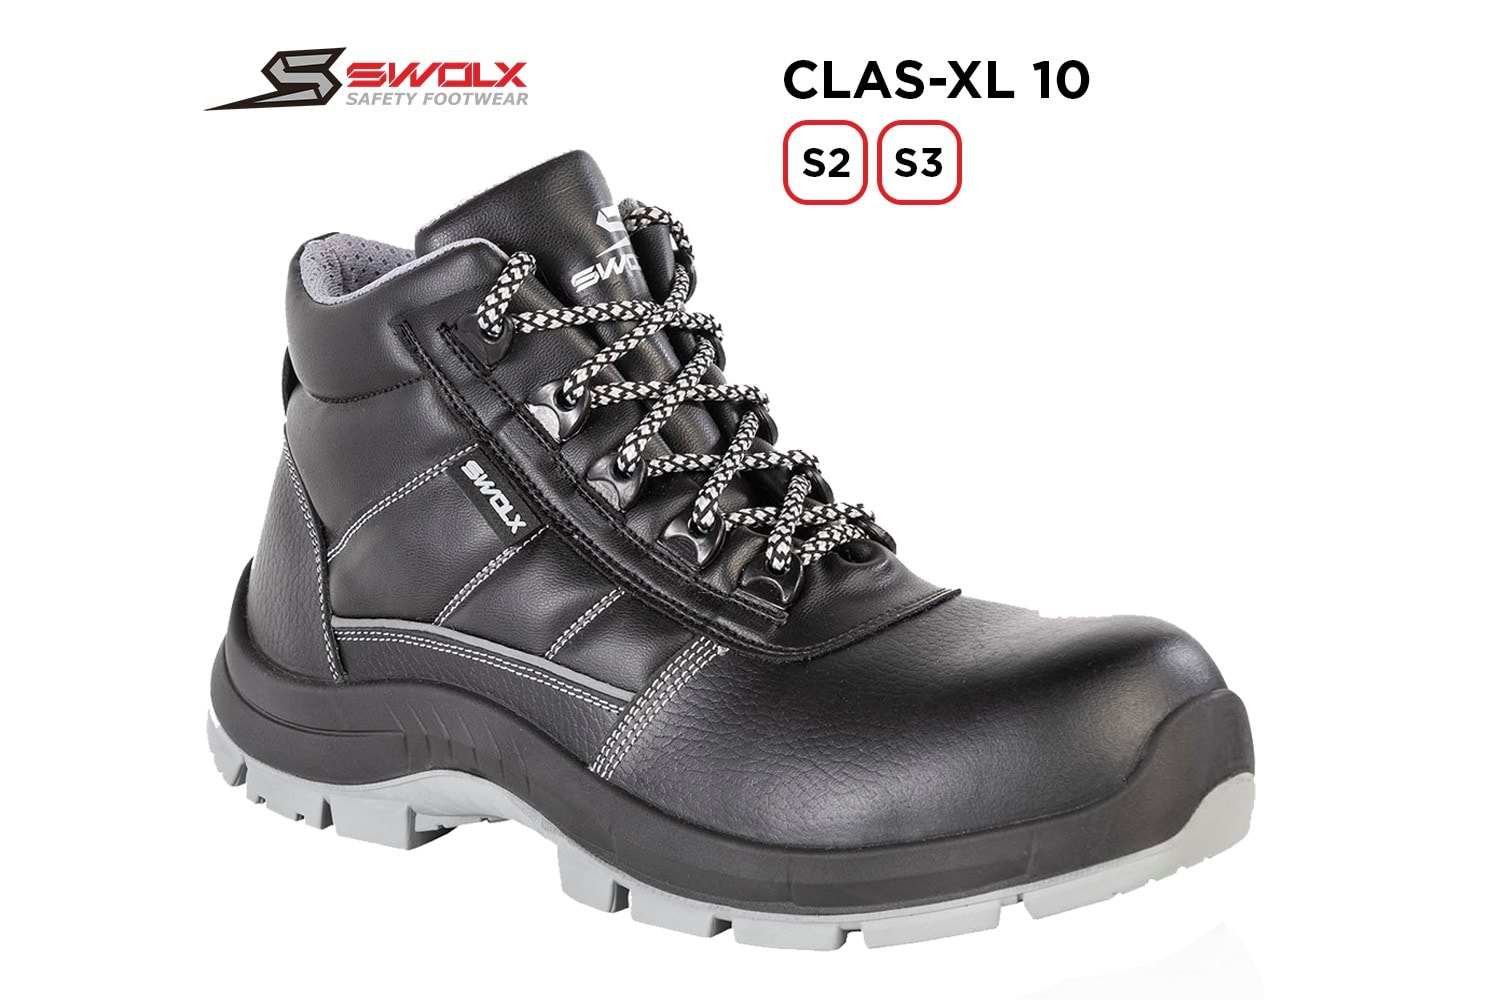 Swolx İş Ayakkabısı - Clas-Xl 10 S3 - 42